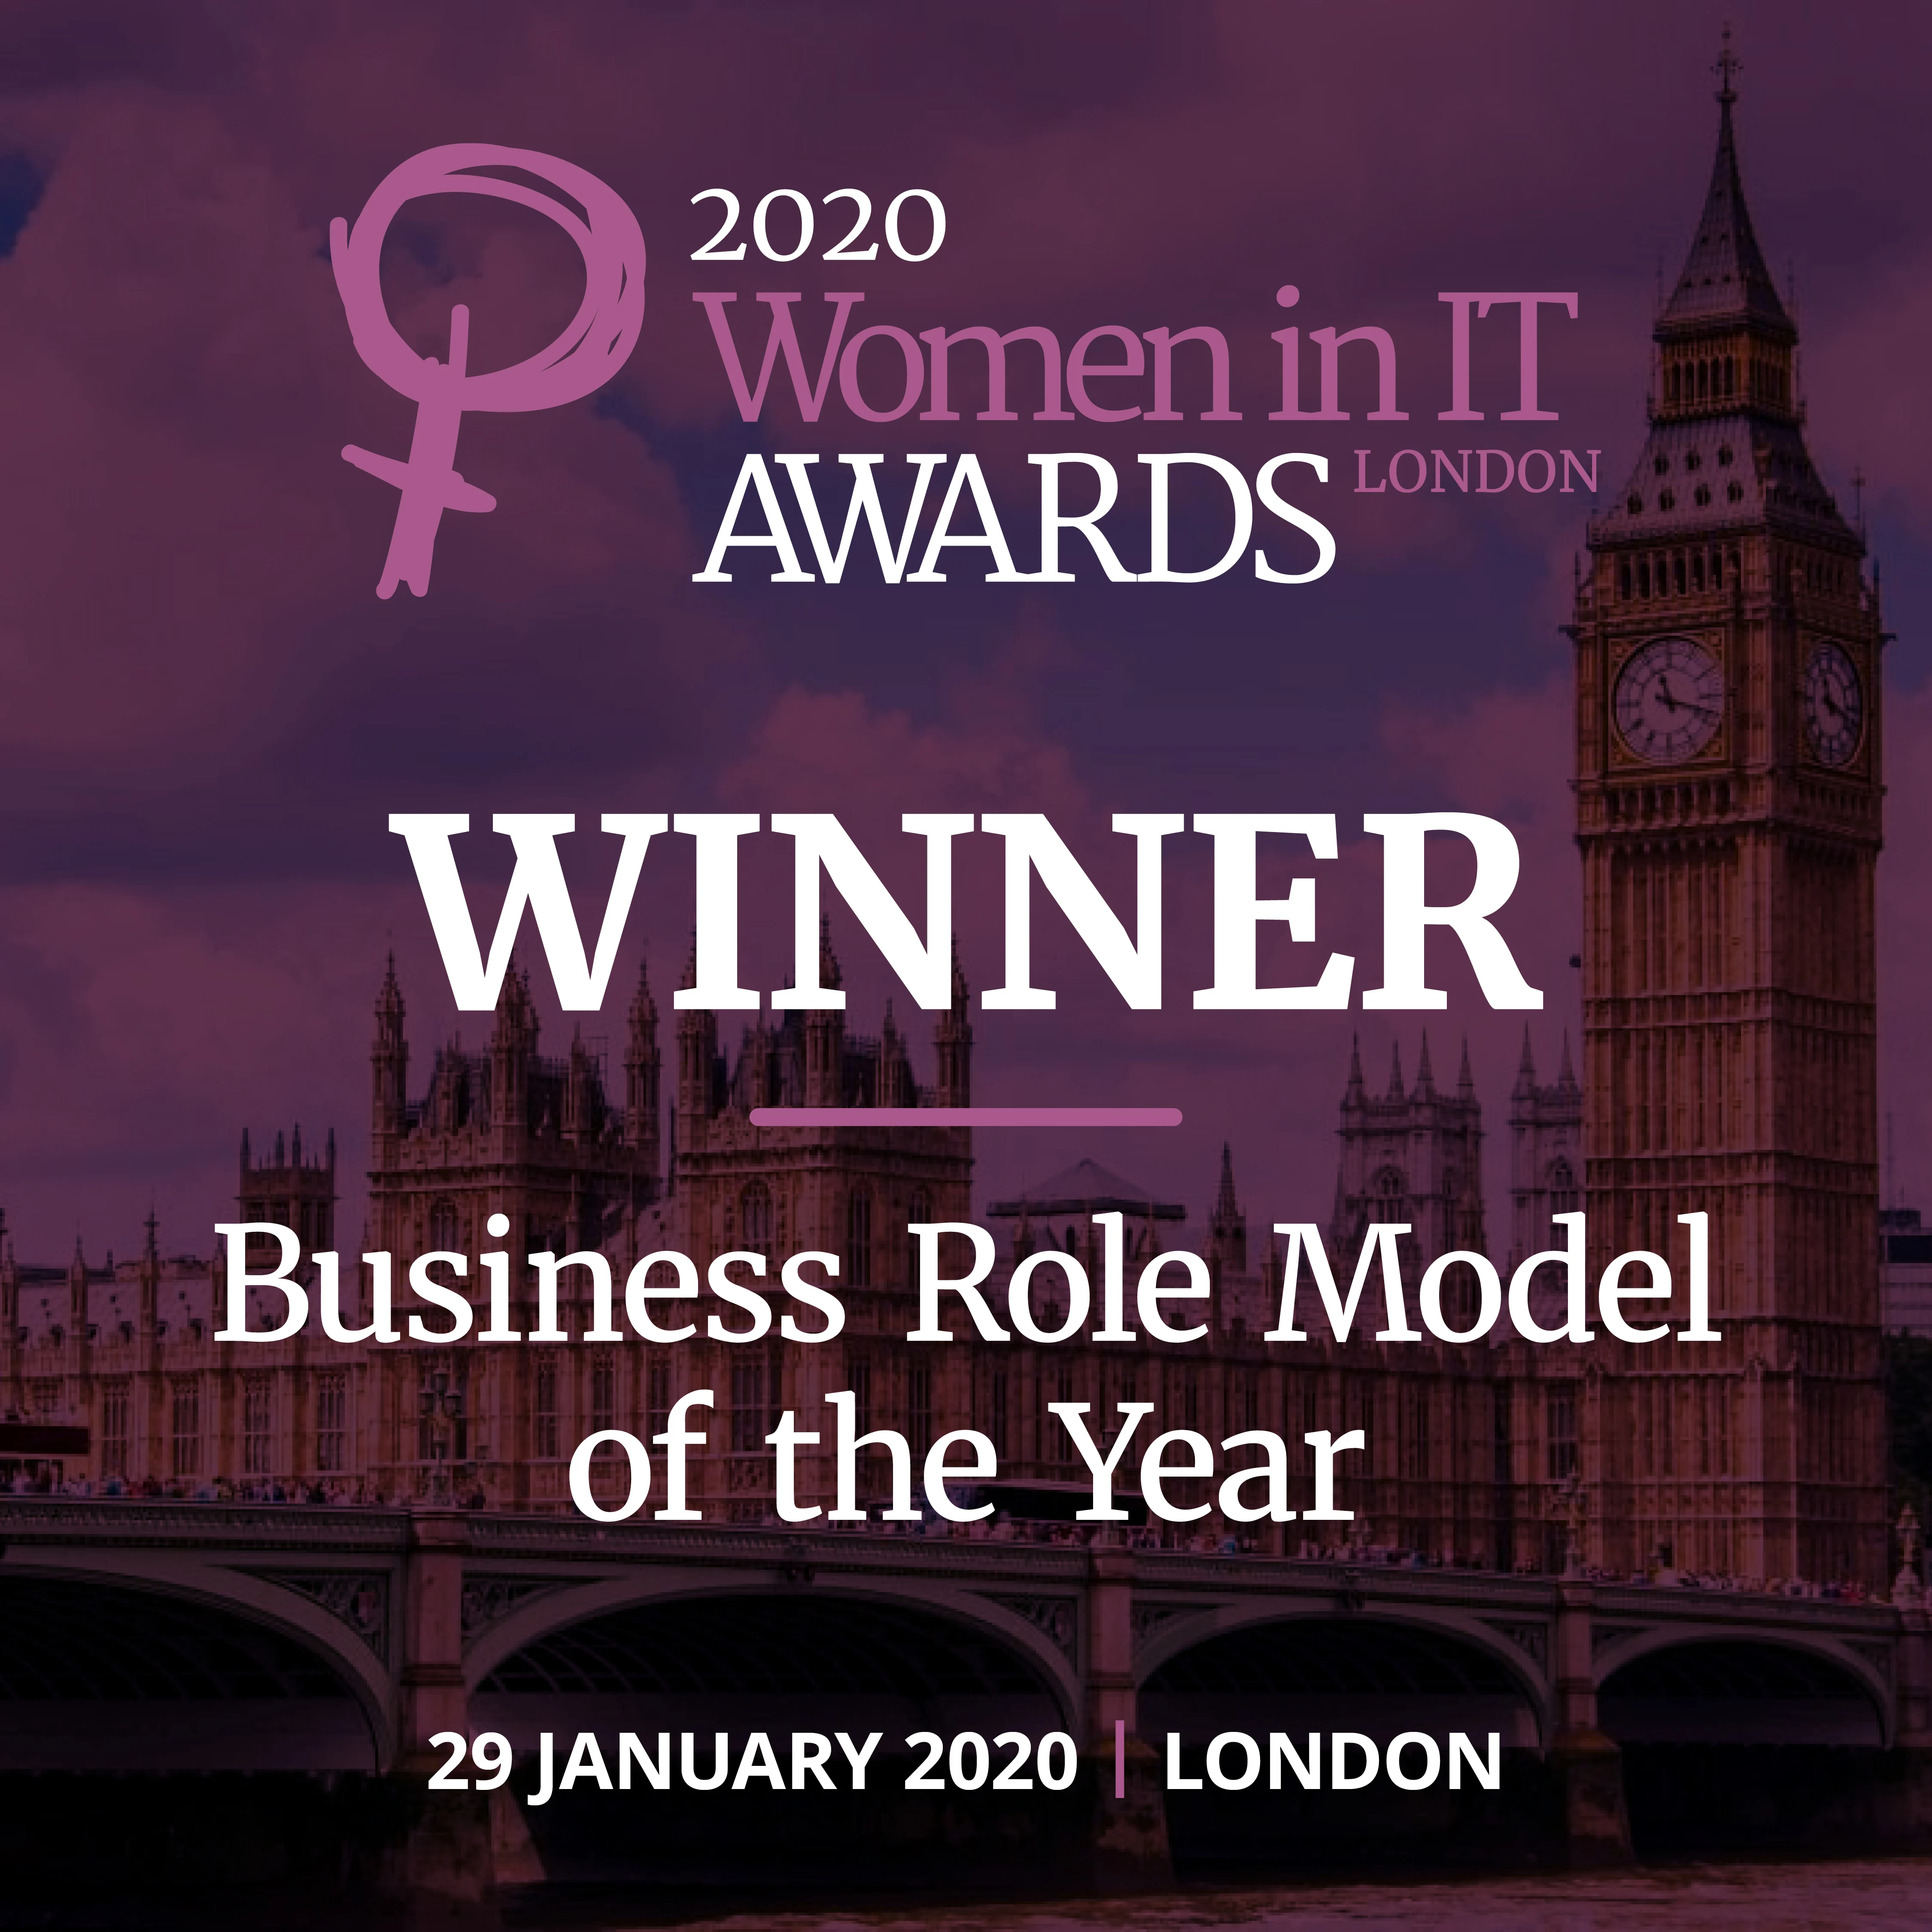 Awards and recognitiosn slider WIIT-Awards-London-2020-WinnerTiles-1080x1080-BusinessRoleModelOTY 2